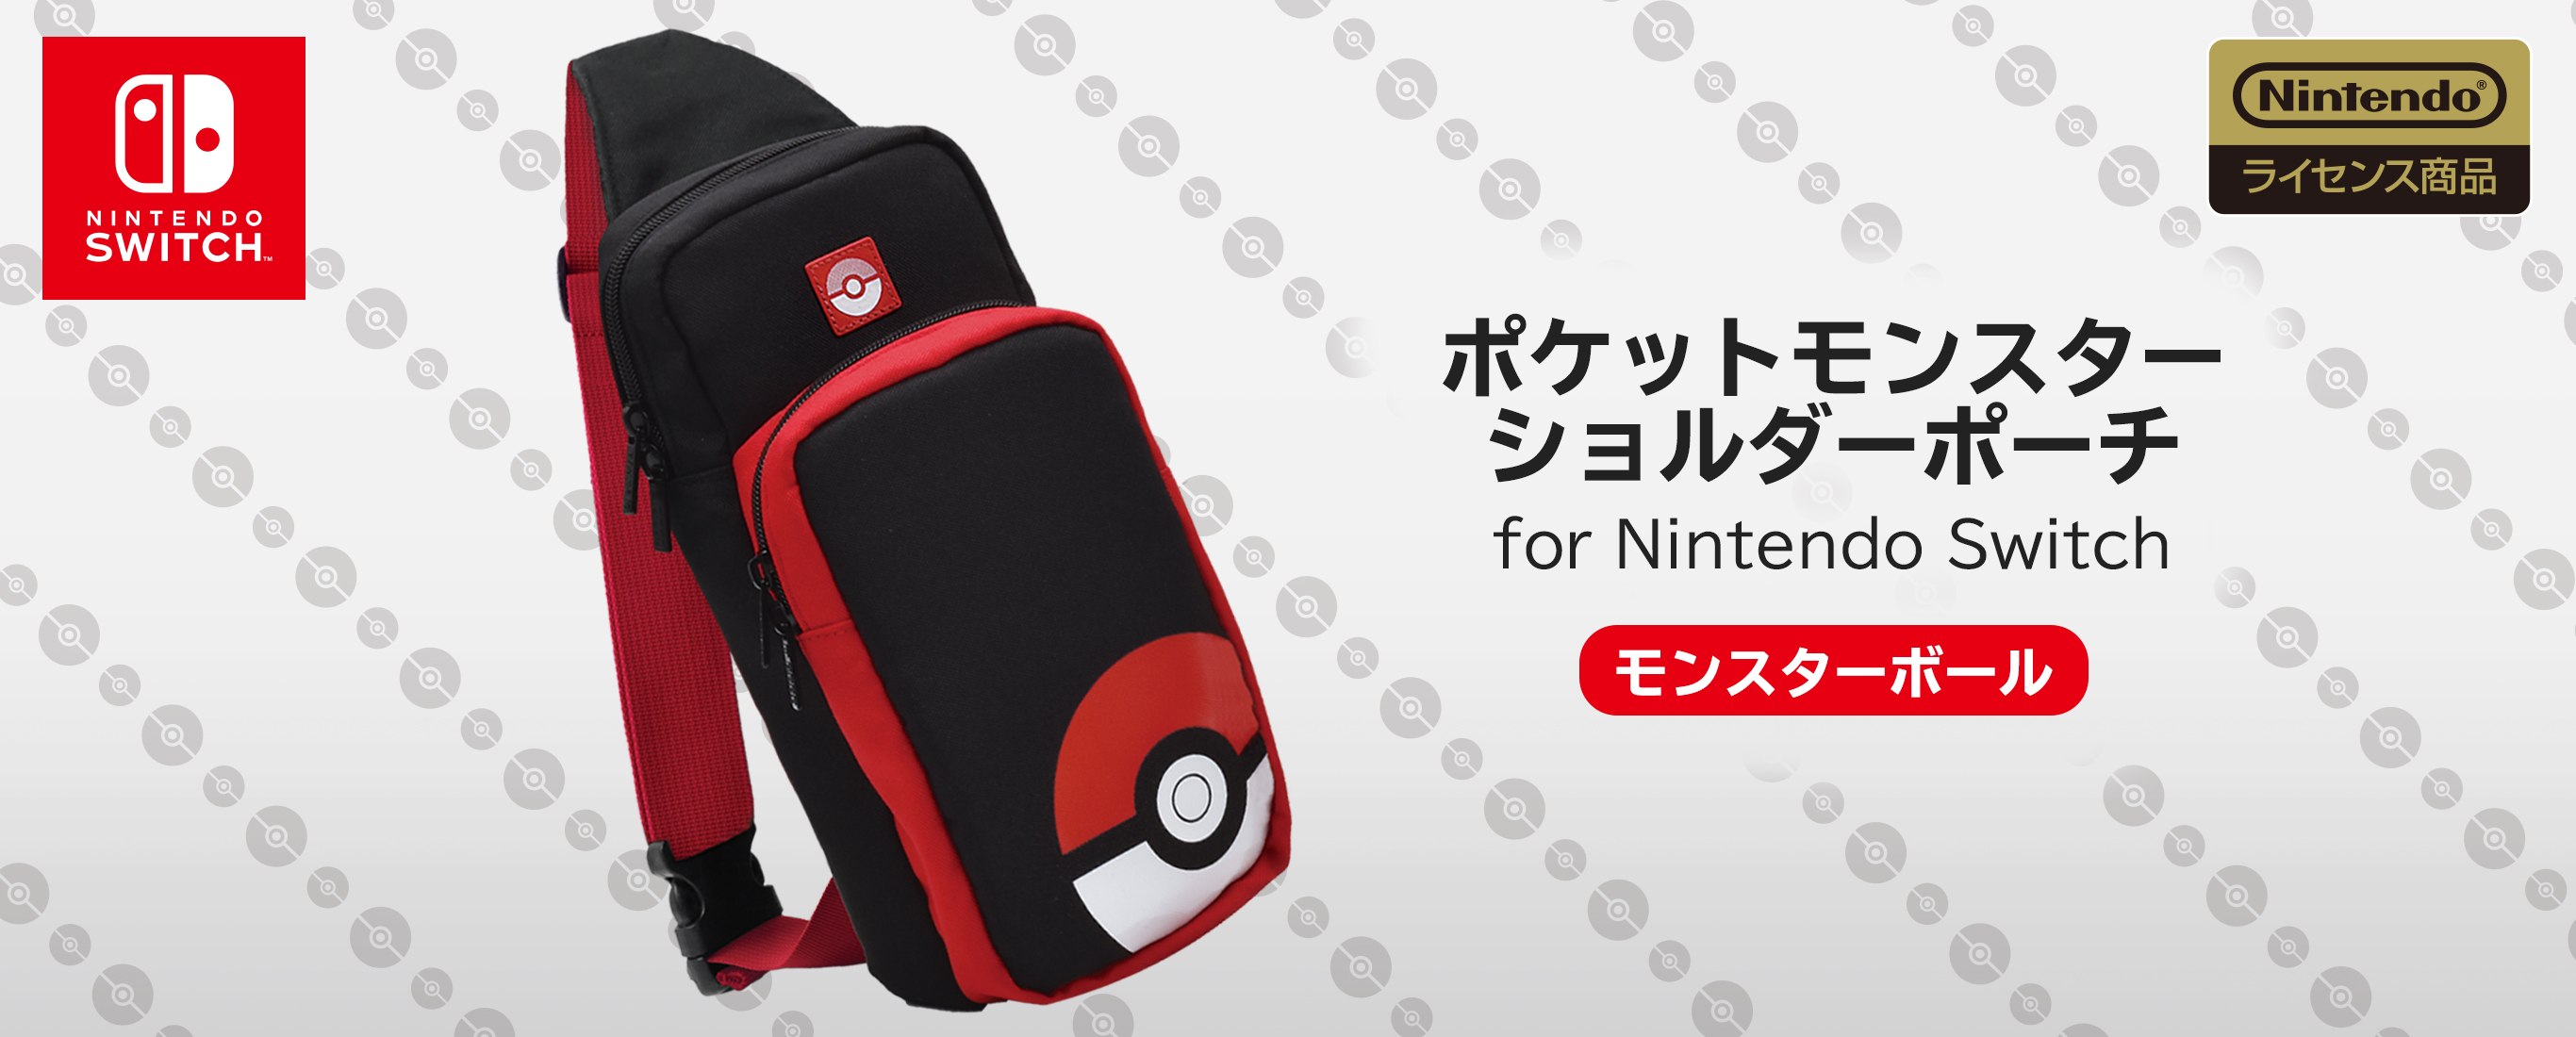 株式会社 Hori ポケットモンスター ショルダーポーチ For Nintendo Switch モンスターボール